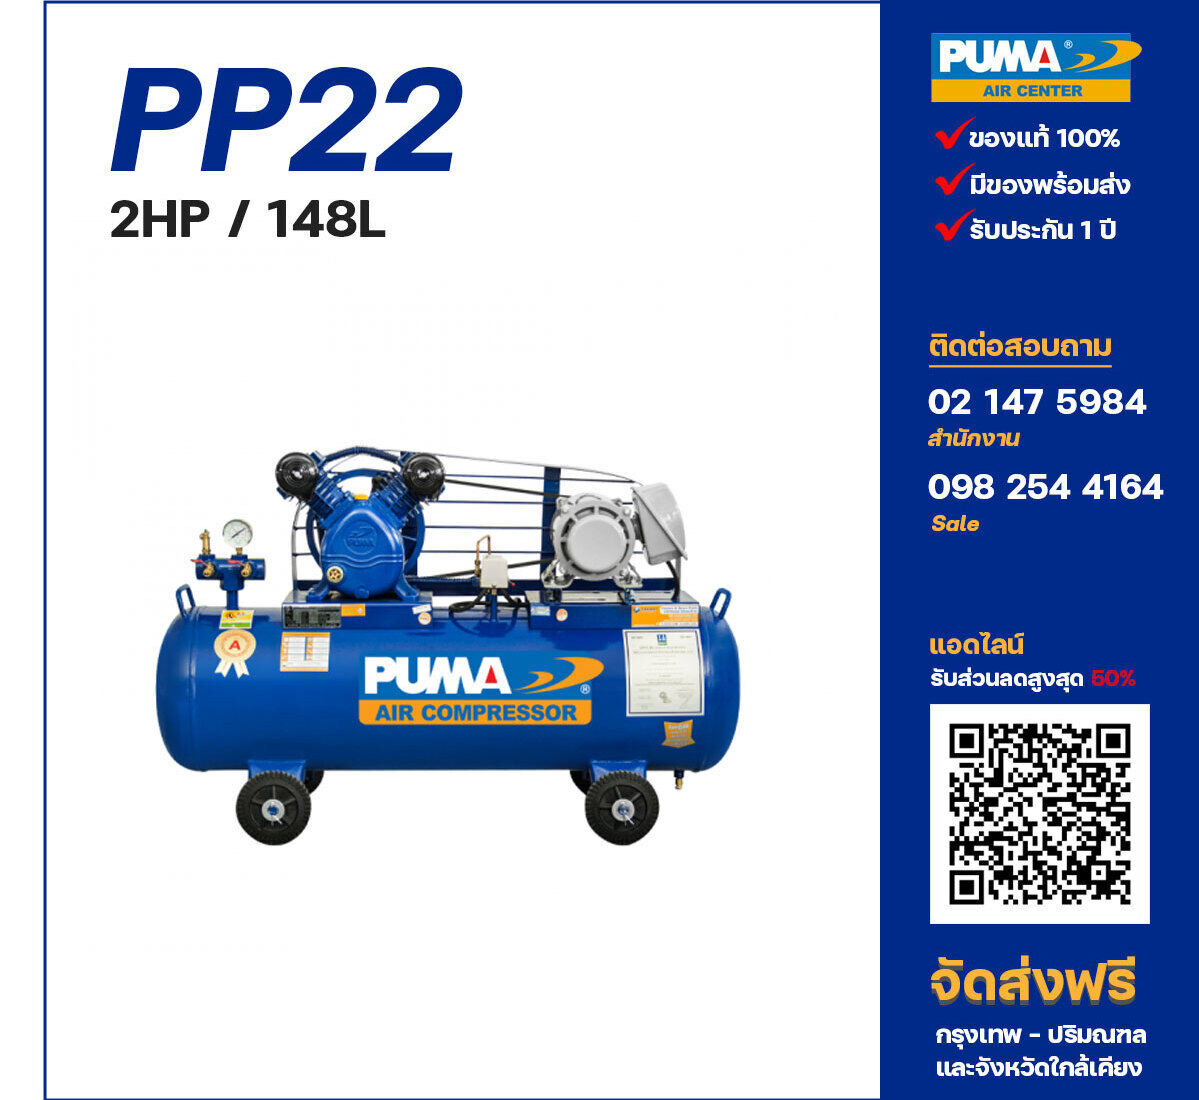 ปั๊มลมพูม่า PUMA PP22-PPM220V ปั๊มลมลูกสูบ ขนาด 2 สูบ 2 แรงม้า 148 ลิตร PUMA พร้อมมอเตอร์ PUMA ไฟ 220V ส่งฟรี กรุงเทพฯ-ปริมณฑล รับประกัน 1 ปี